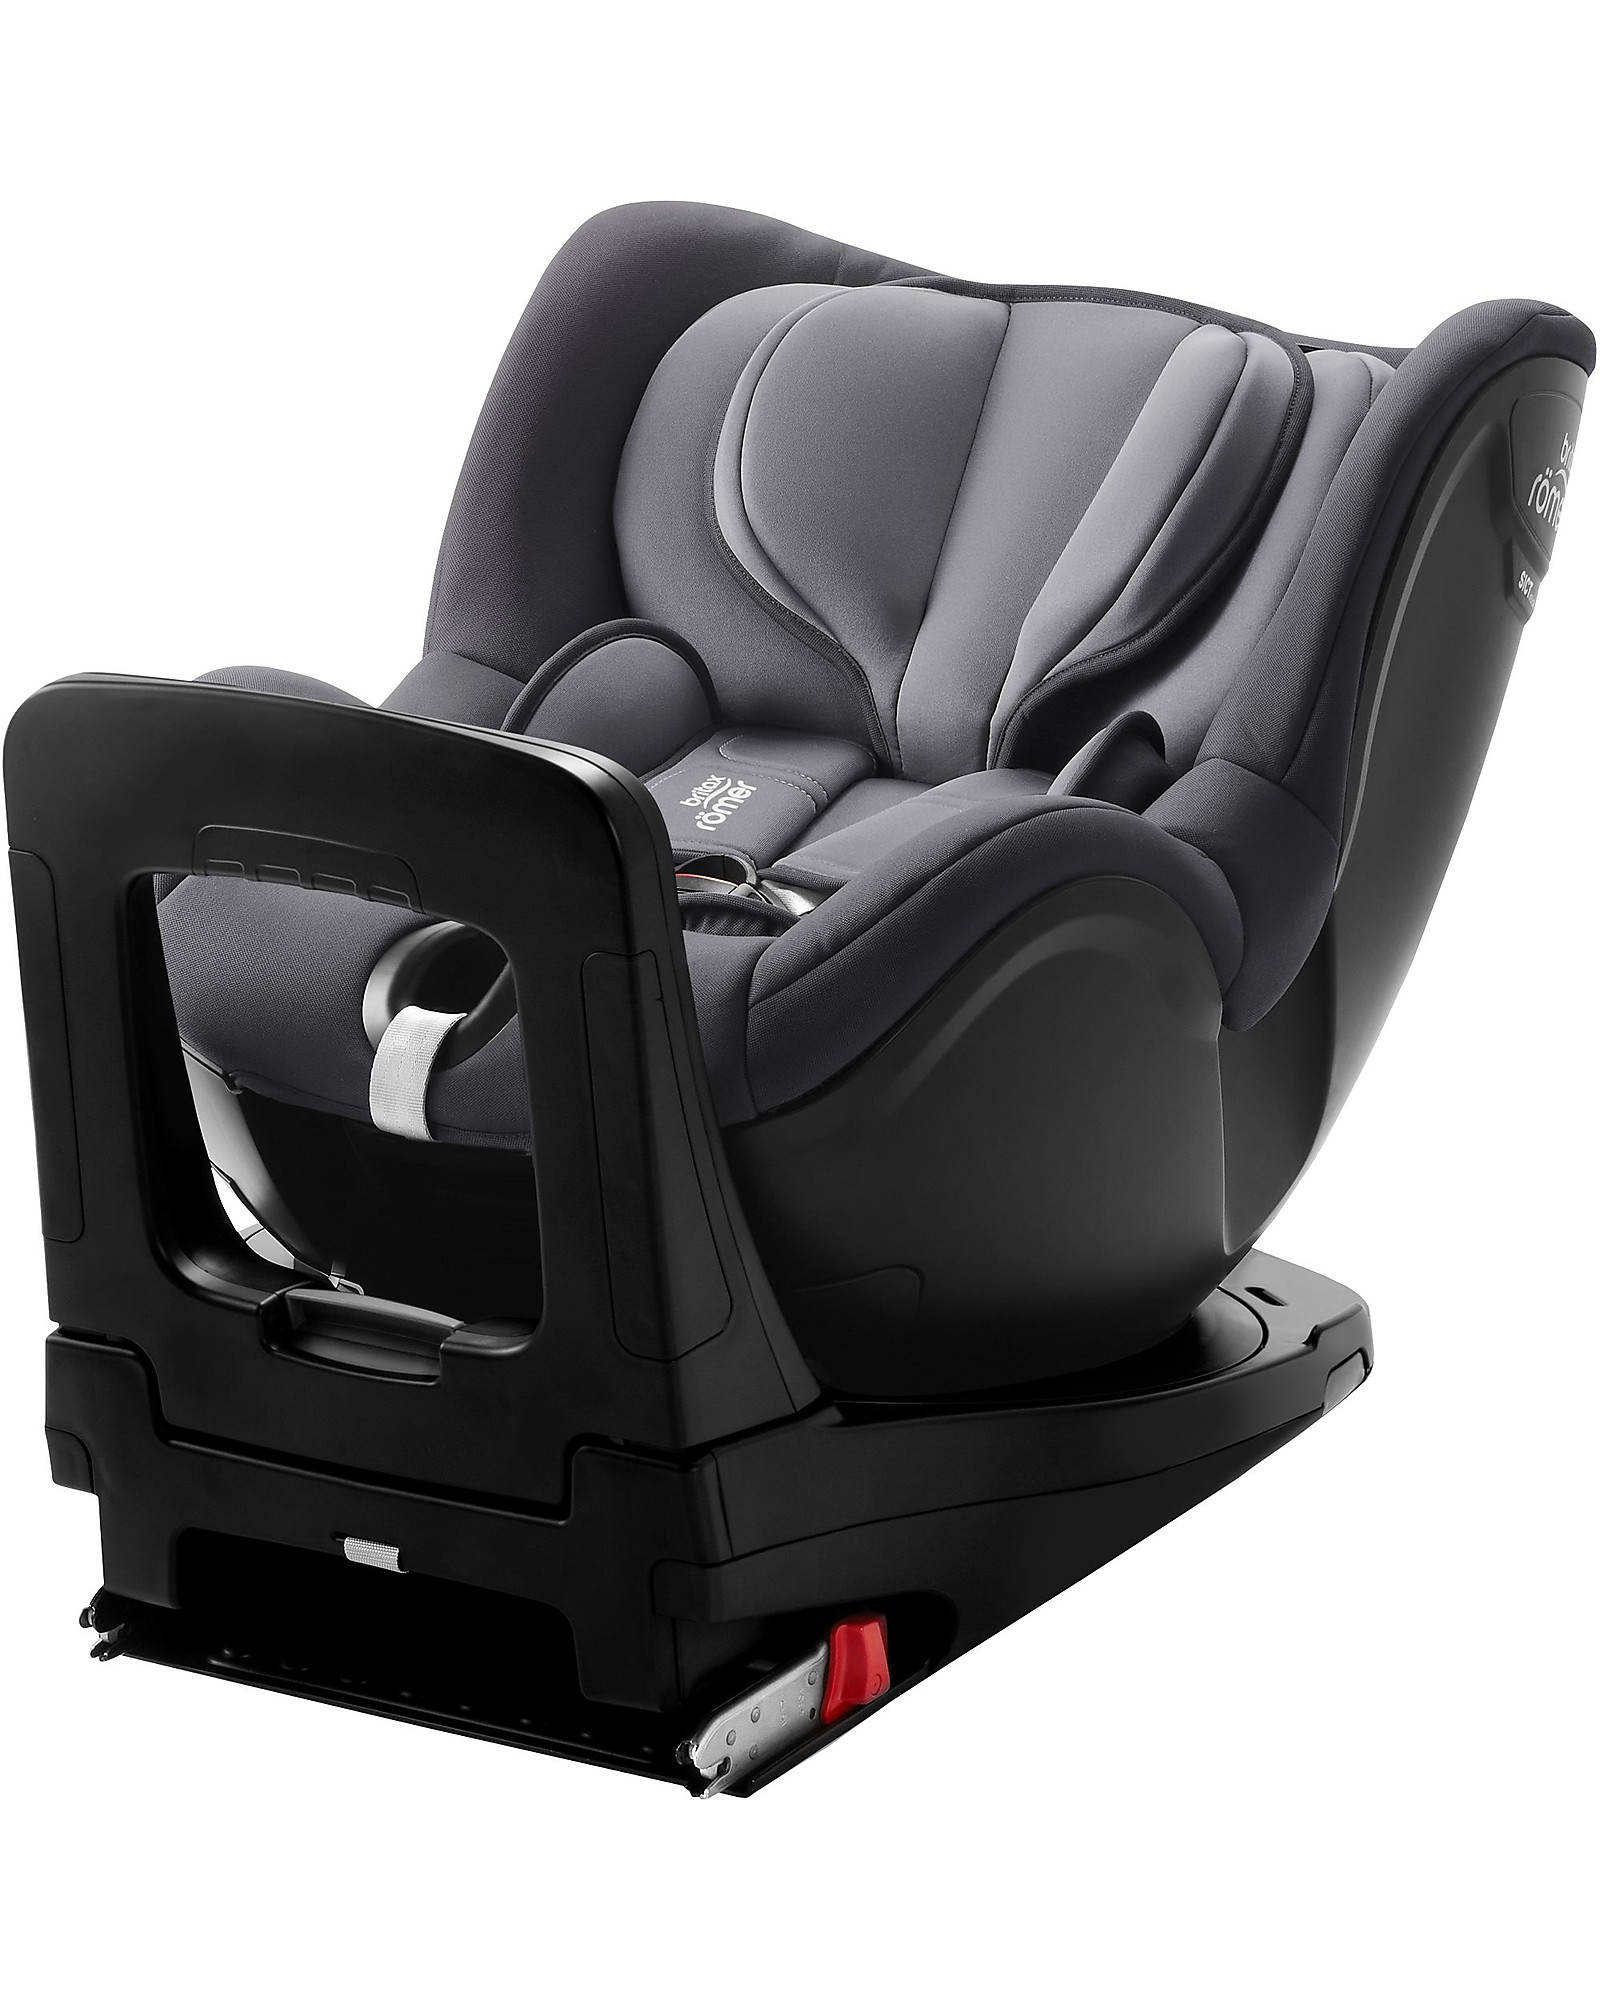 Britax Dualfix - Car seats from birth - Car seats